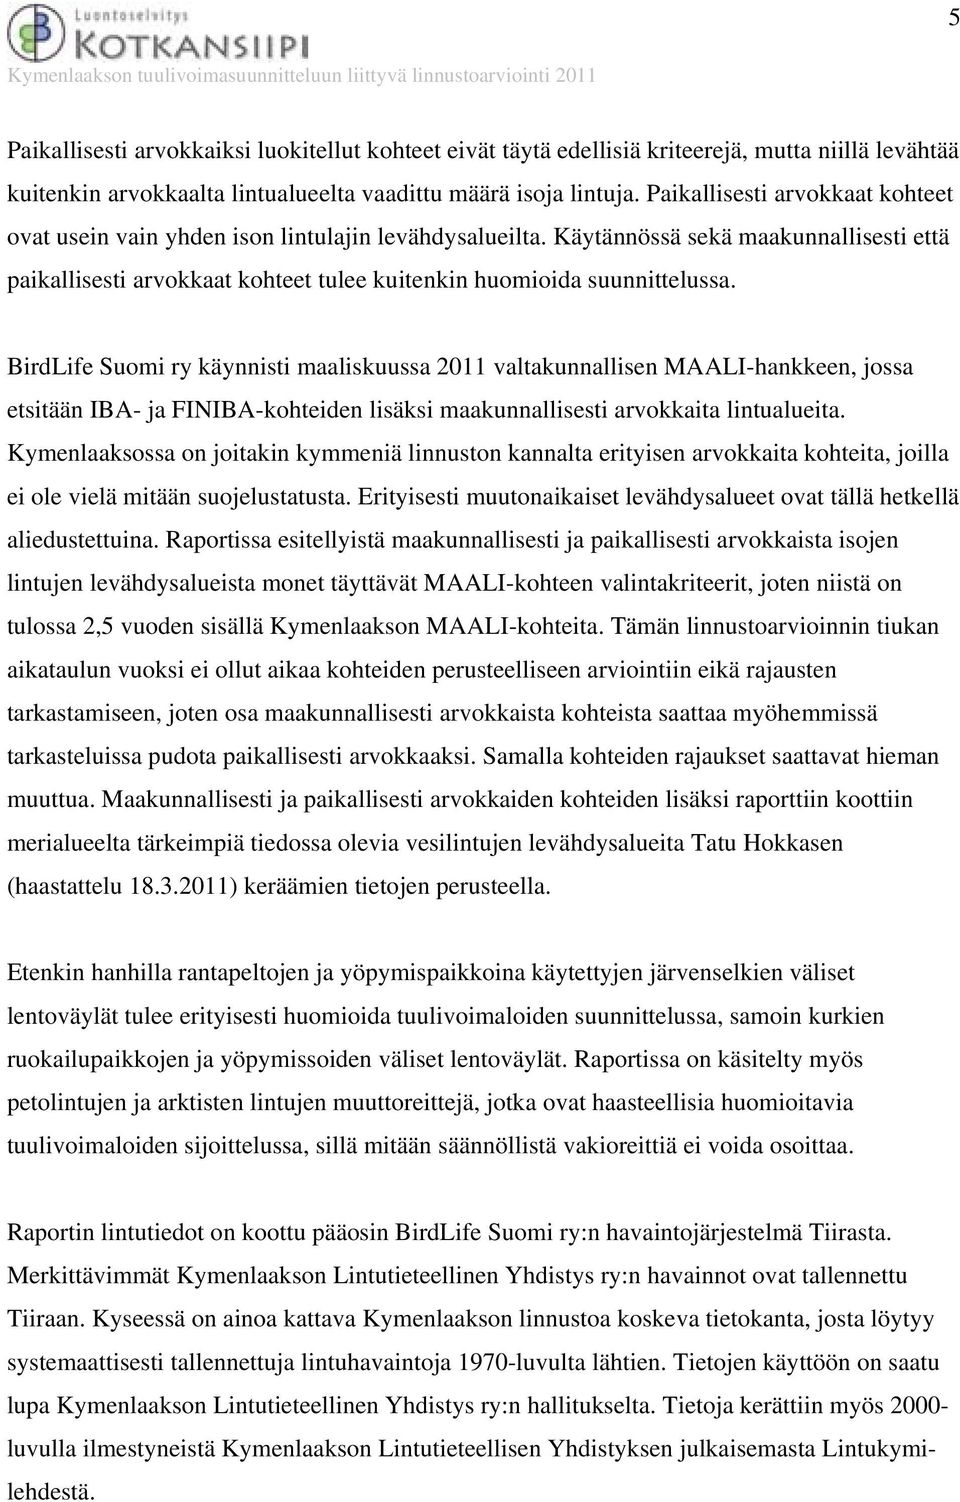 BirdLife Suomi ry käynnisti maaliskuussa 2011 valtakunnallisen MAALI-hankkeen, jossa etsitään IBA- ja FINIBA-kohteiden lisäksi maakunnallisesti arvokkaita lintualueita.